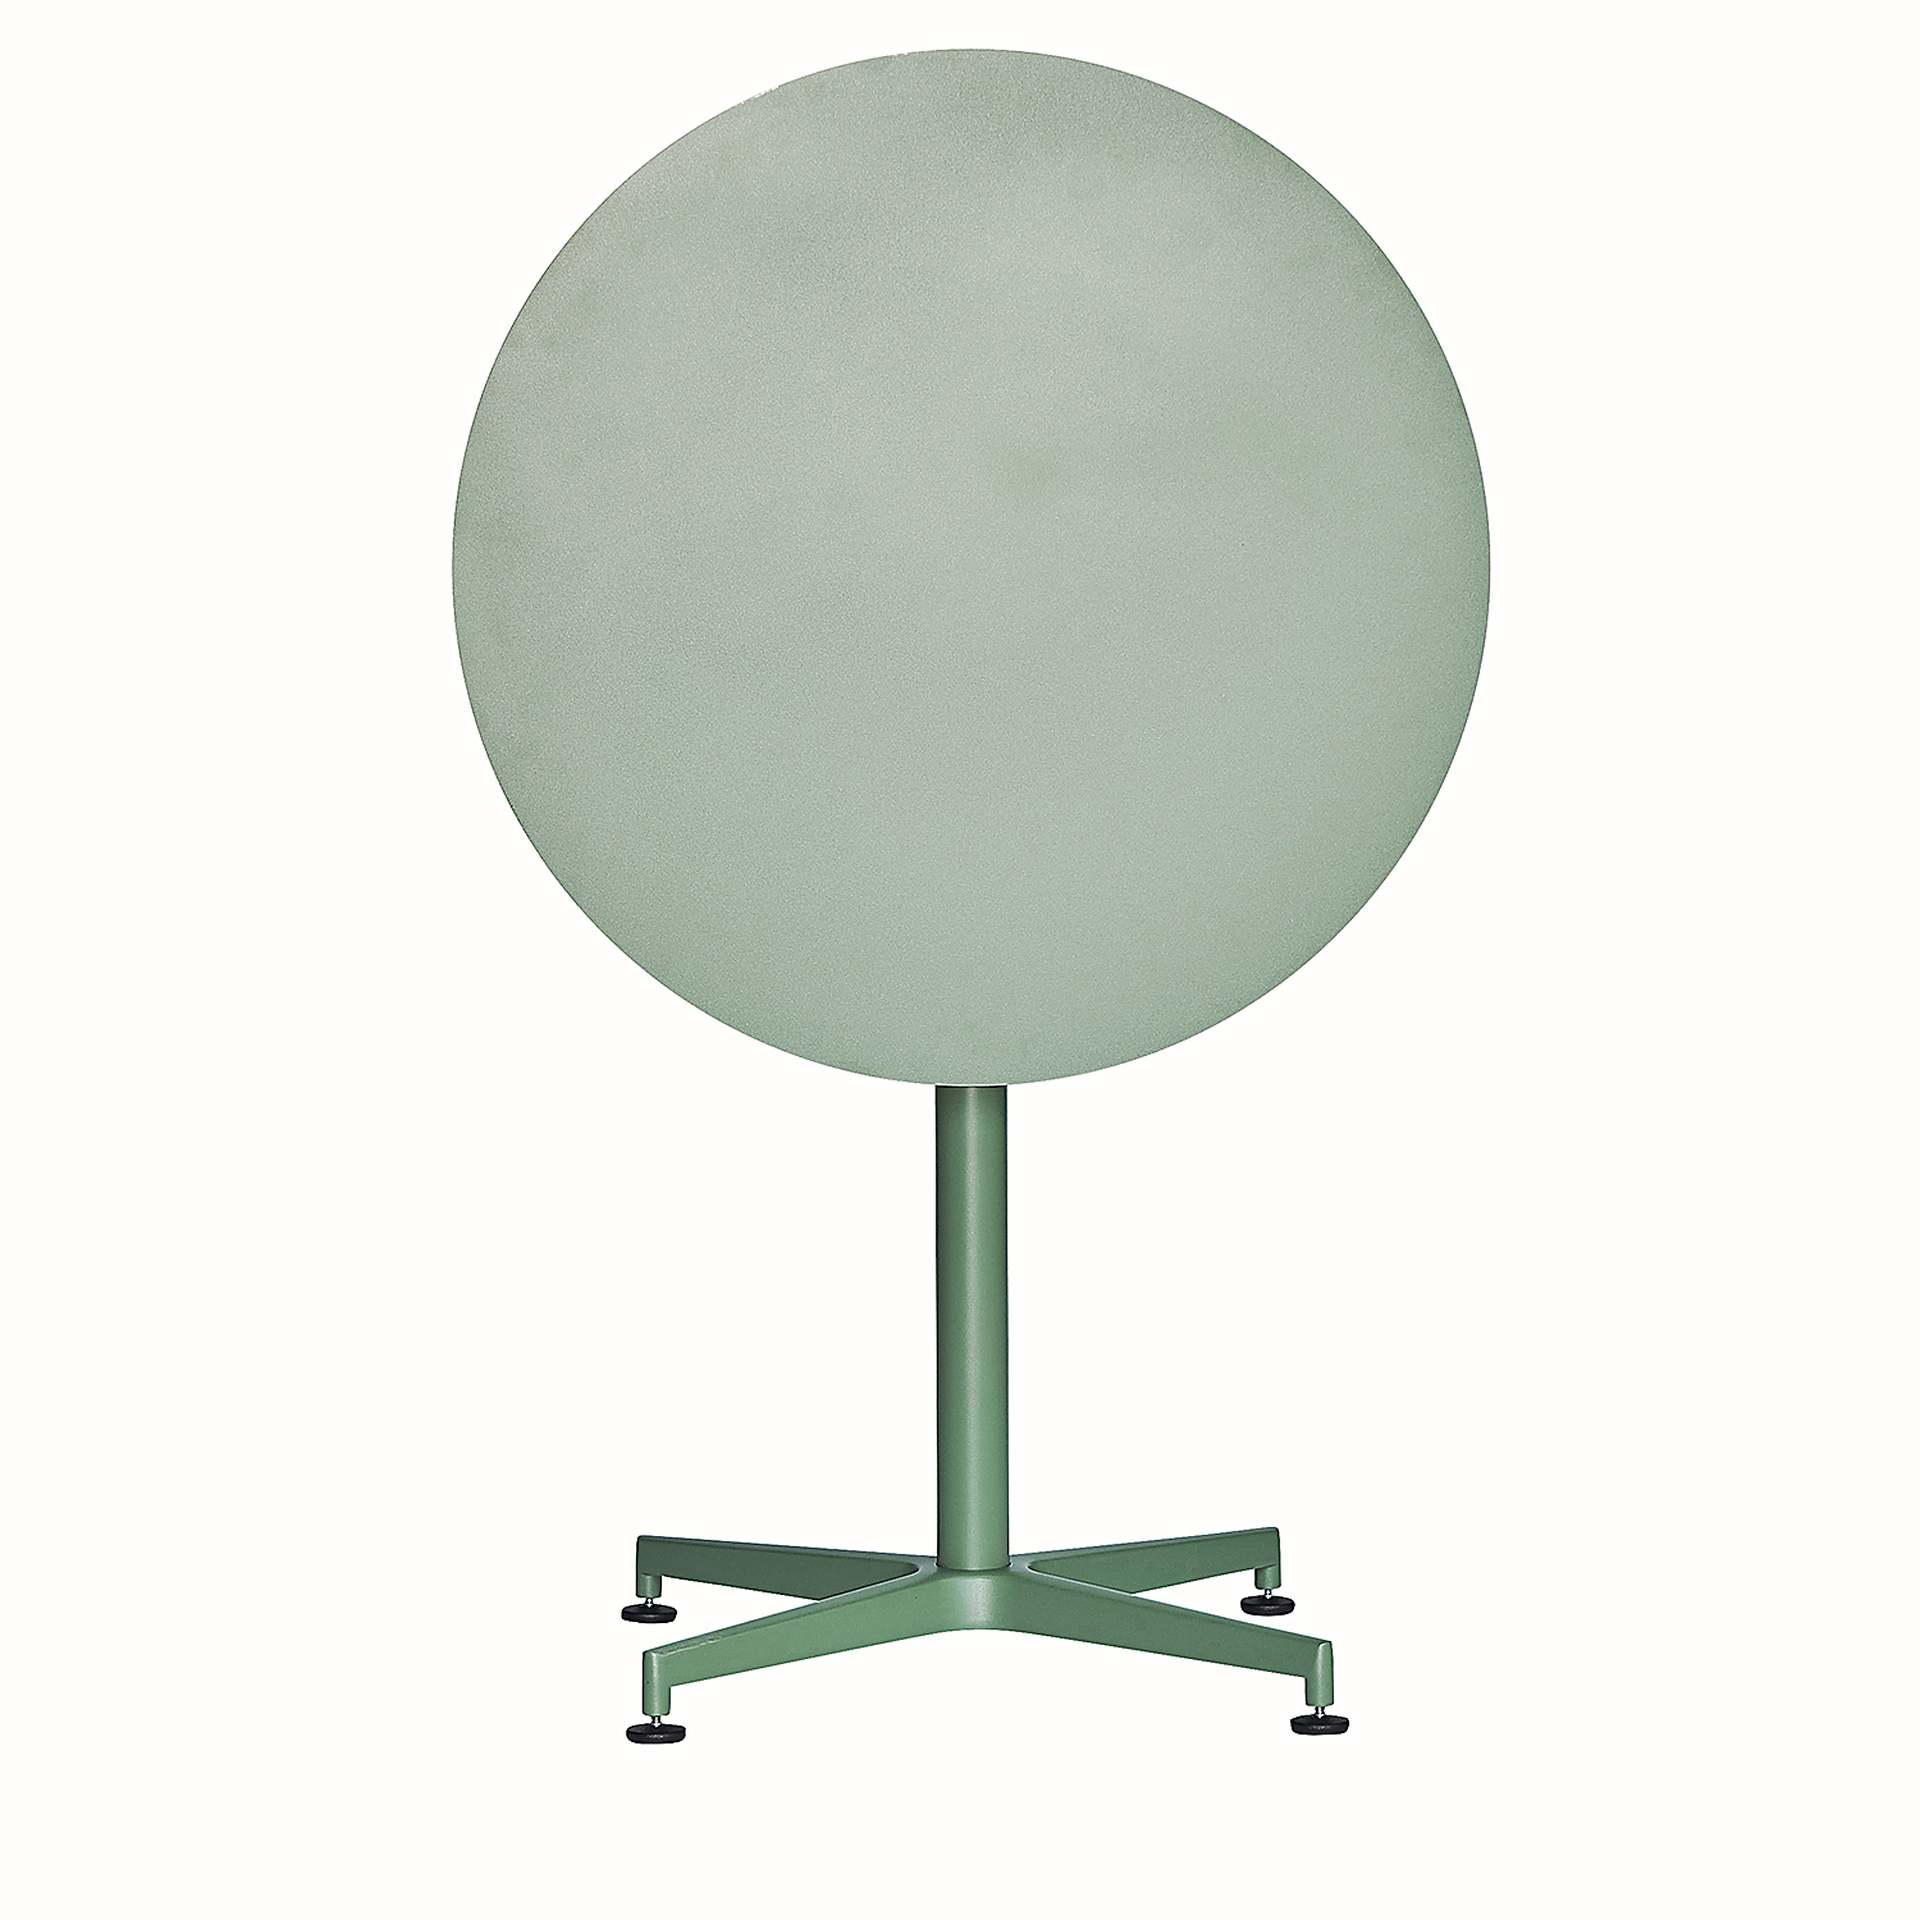 Der Klapptisch Vega in runder Form besitzt ein modernes Design. Hergestellt wurde der Tisch aus Aluminium und ist in verschieden Farben erhältlich. Der Tisch ist von der Marke Jan Kurtz.